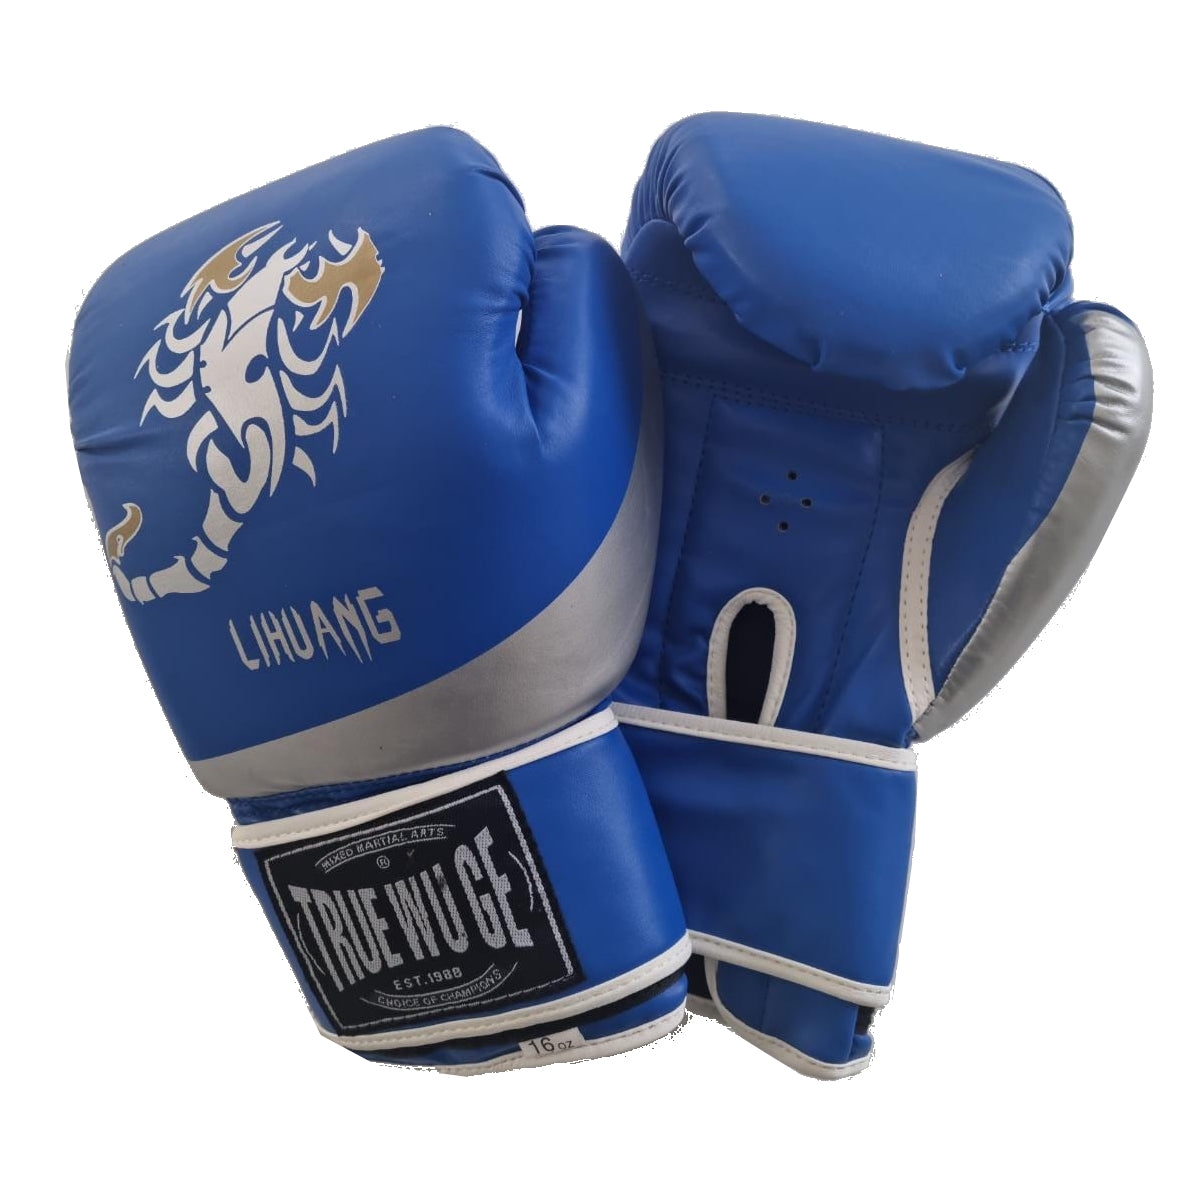 Boxing Gloves (Pair) | Fitness Equipment Dublin 16oz / Blue